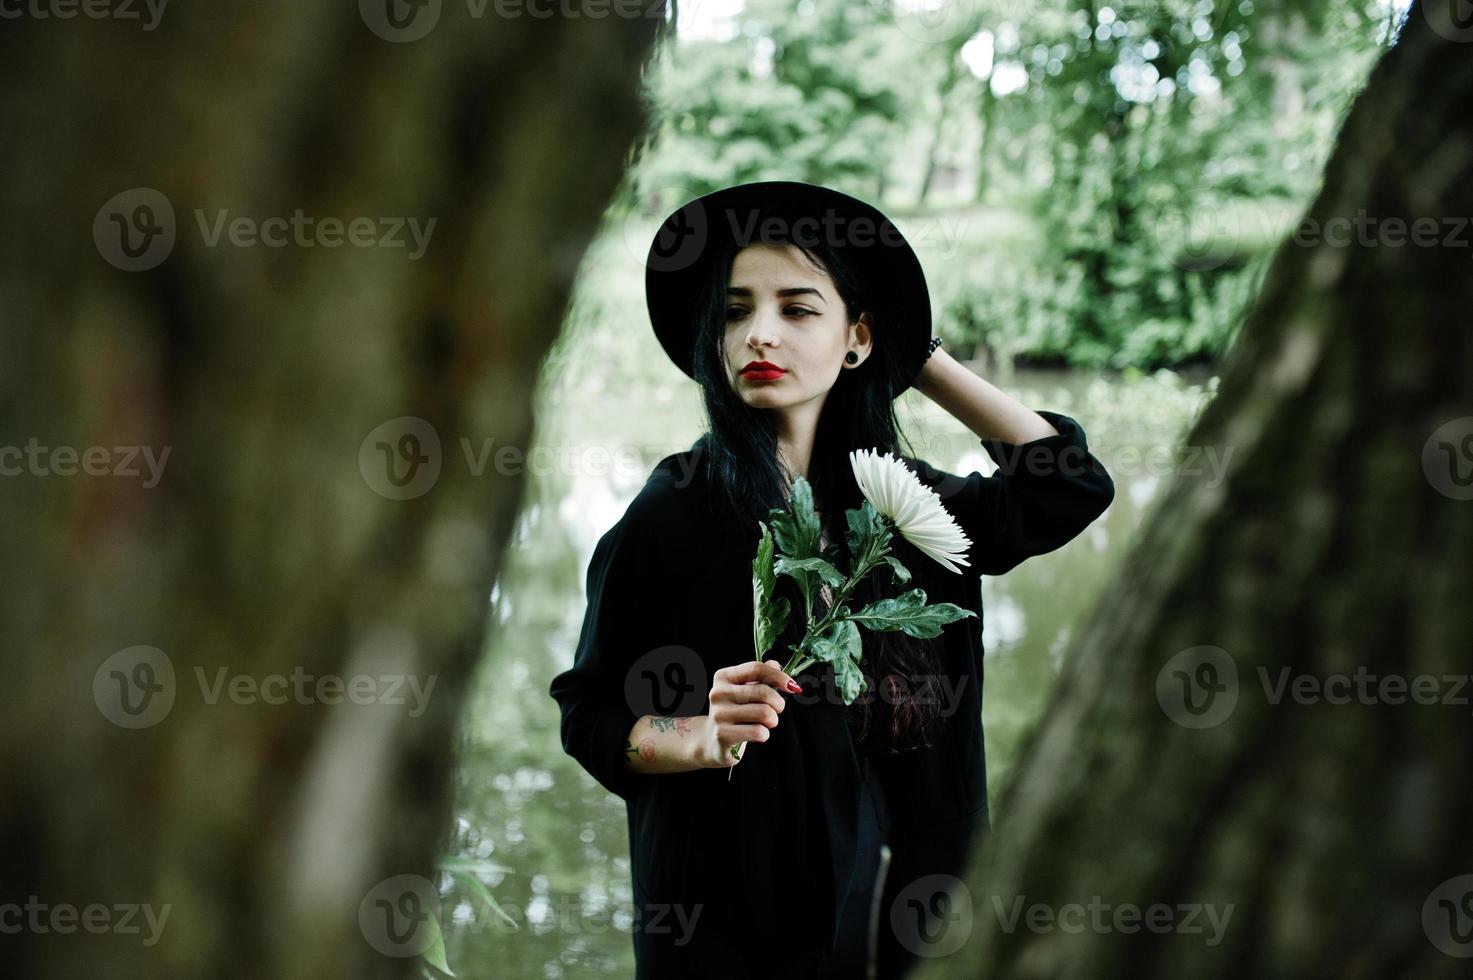 chica sensual todo en negro, labios rojos y sombrero. mujer gótica dramática sostiene una flor de crisantemo blanco a mano contra el lago silencioso. foto